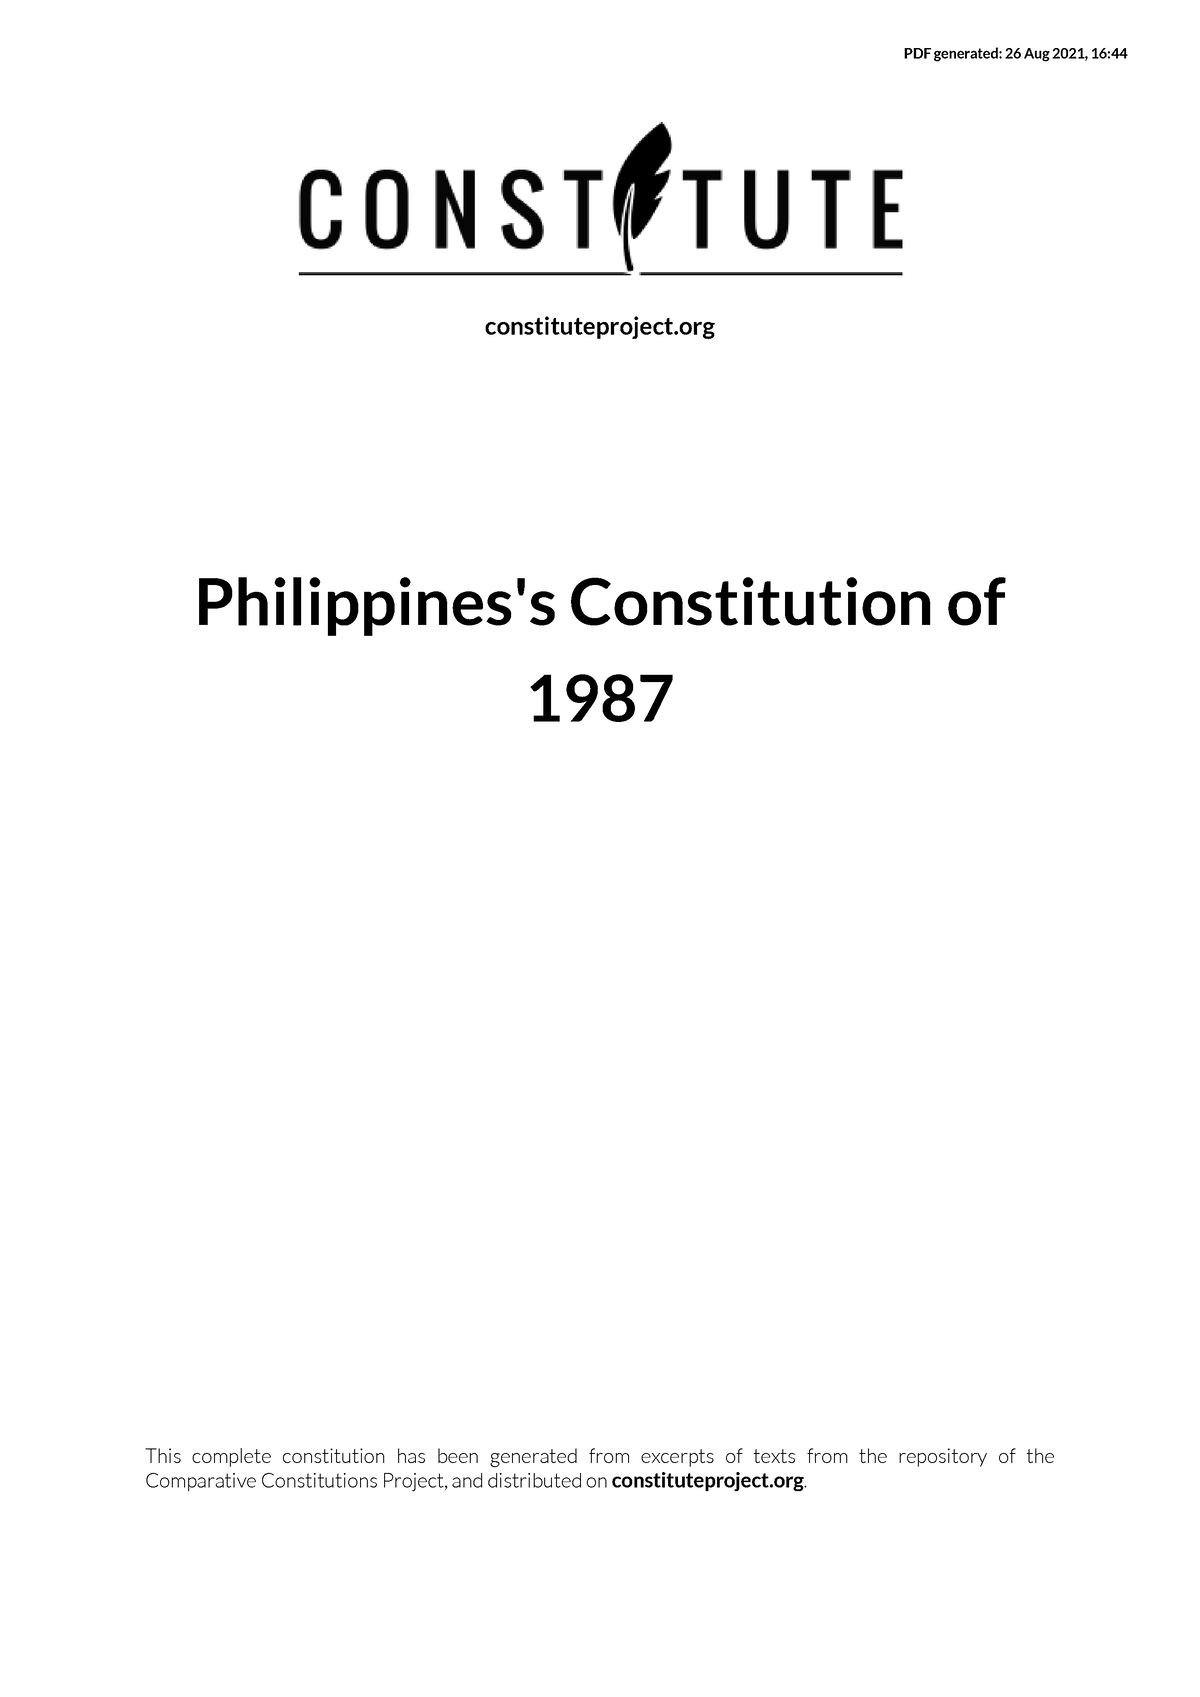 essay on philippine constitution